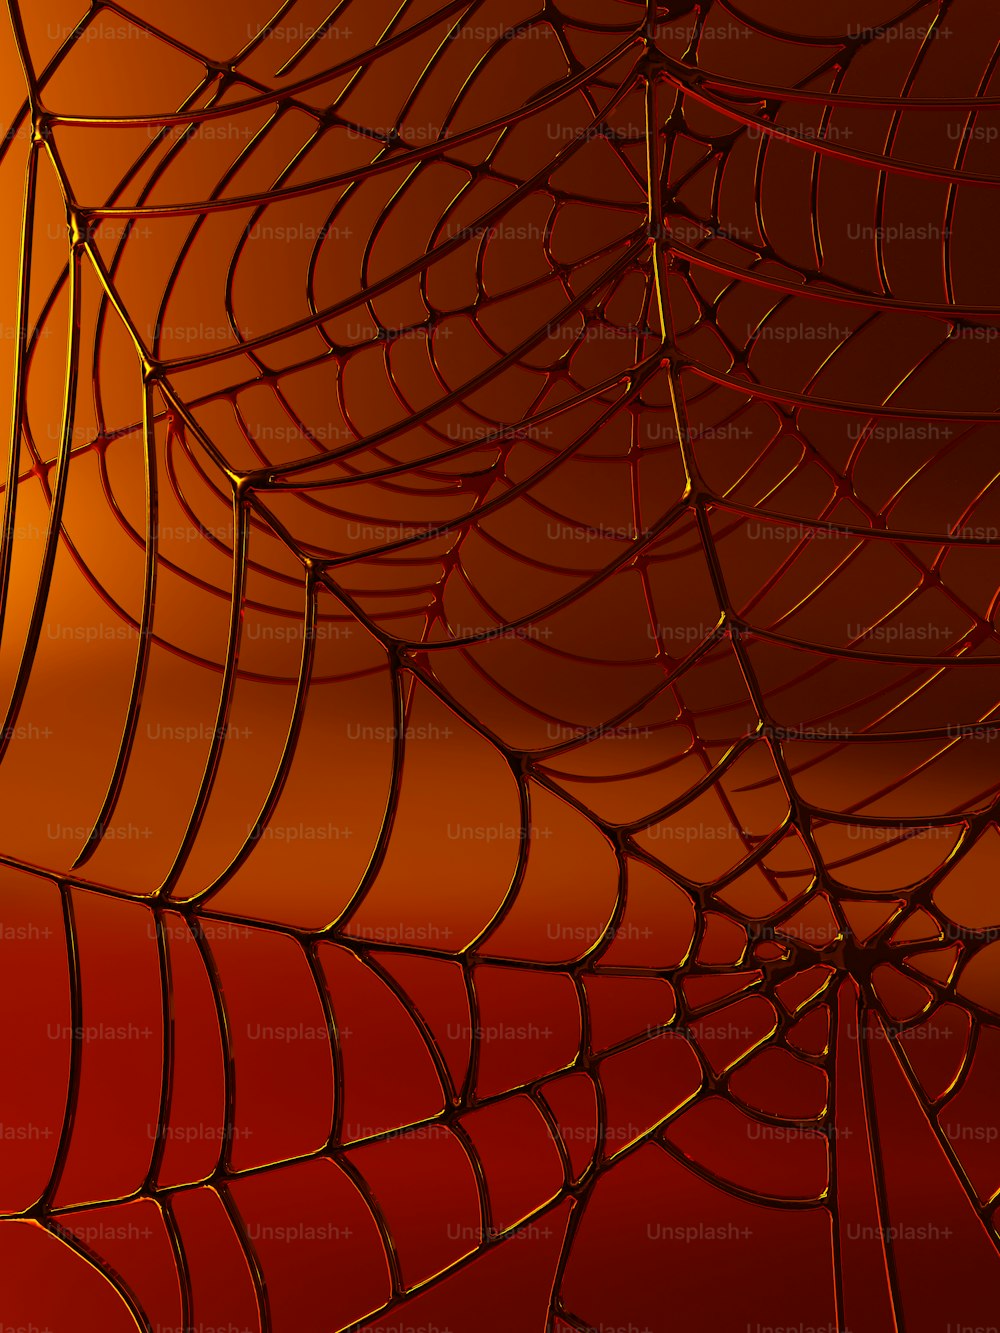 Un primer plano de una tela de araña sobre un fondo rojo